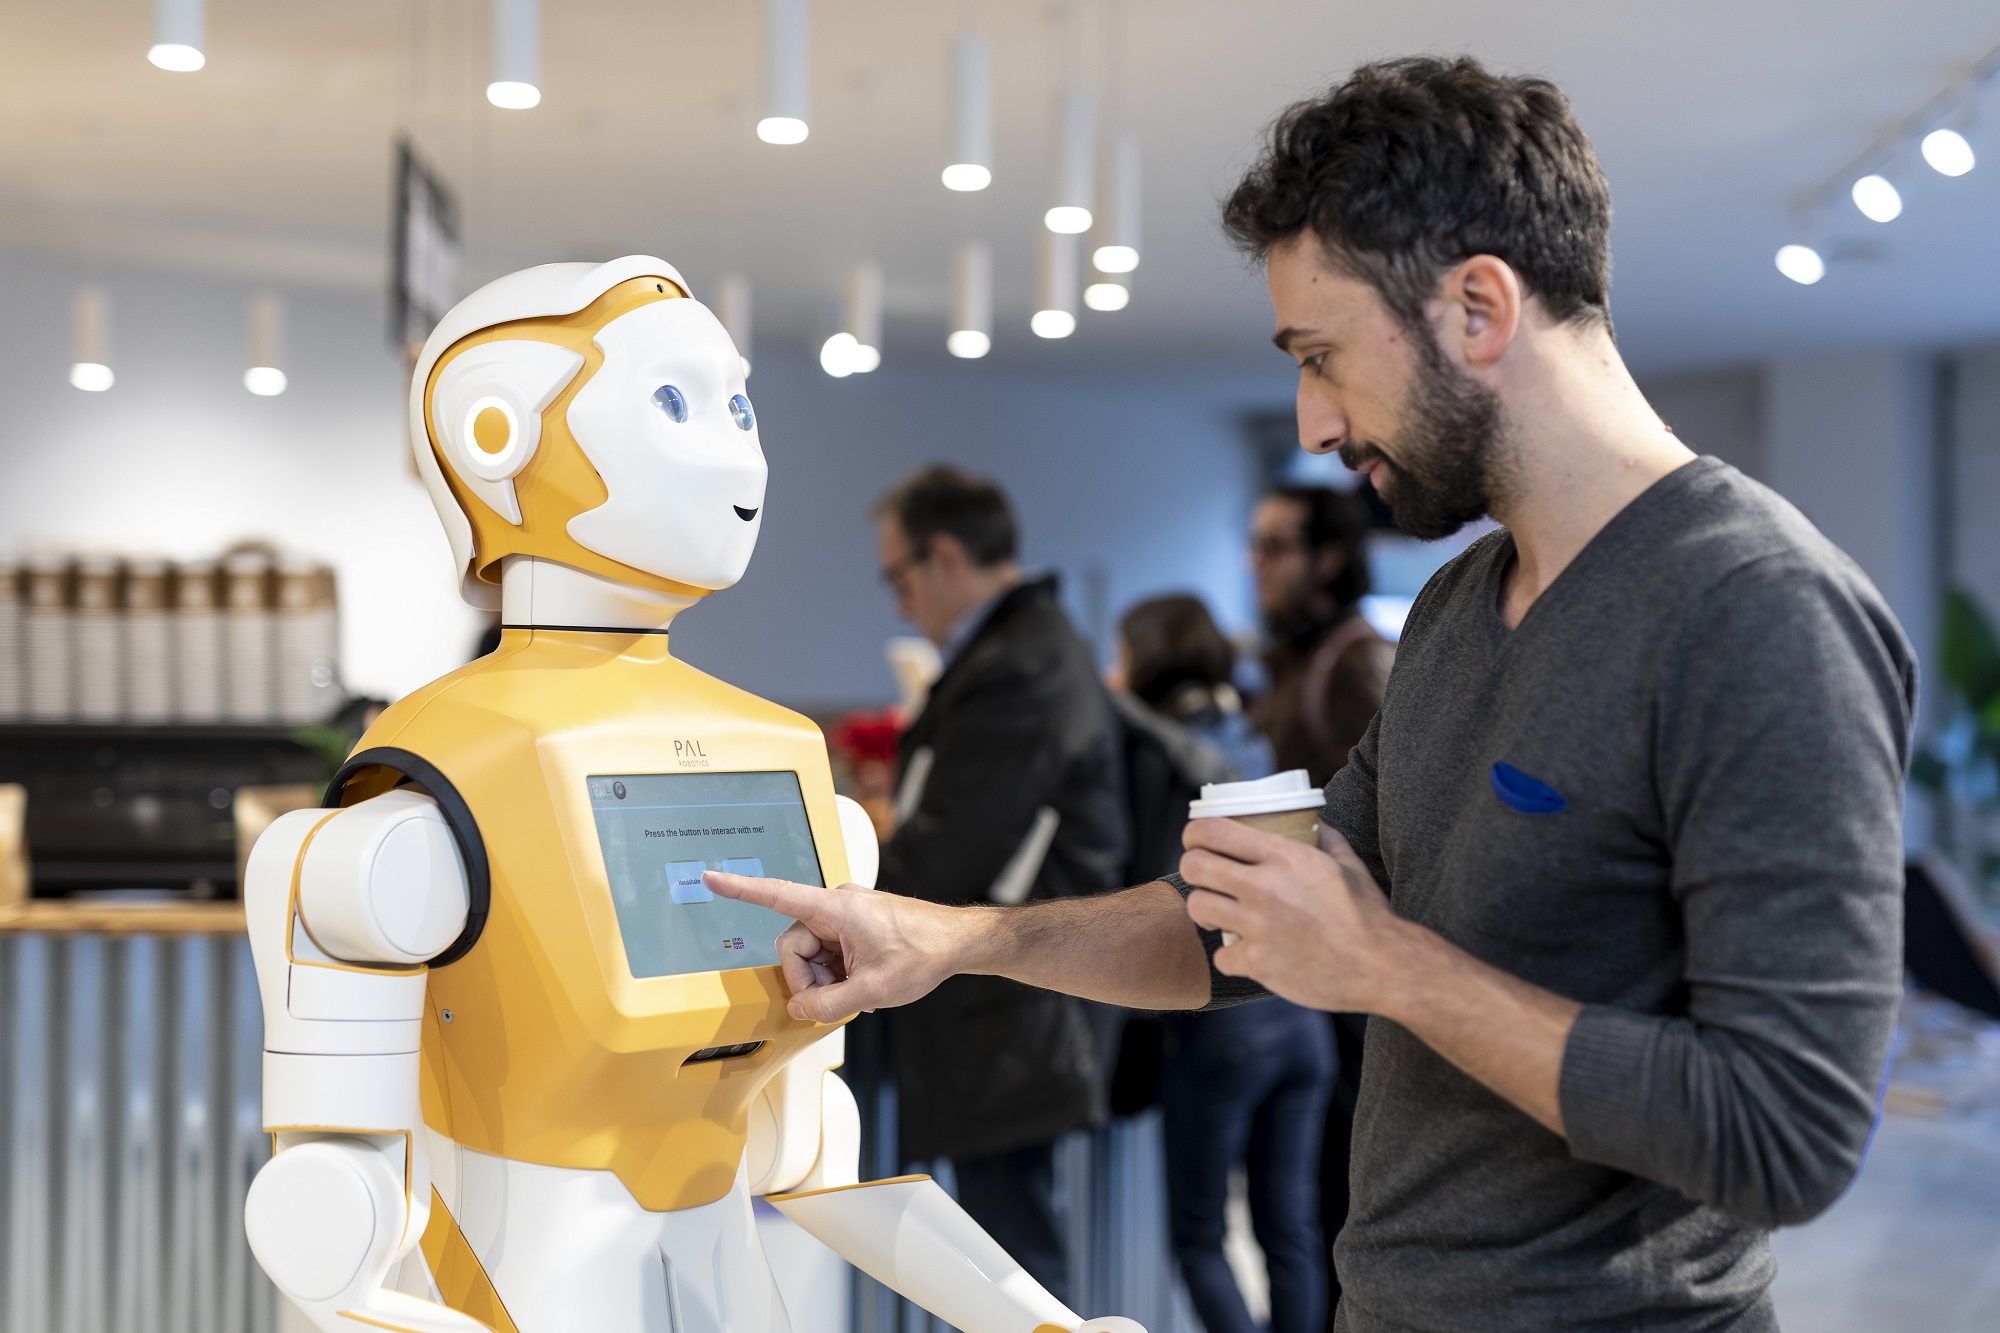 Man interacting with a social robot ARI through a touch screen